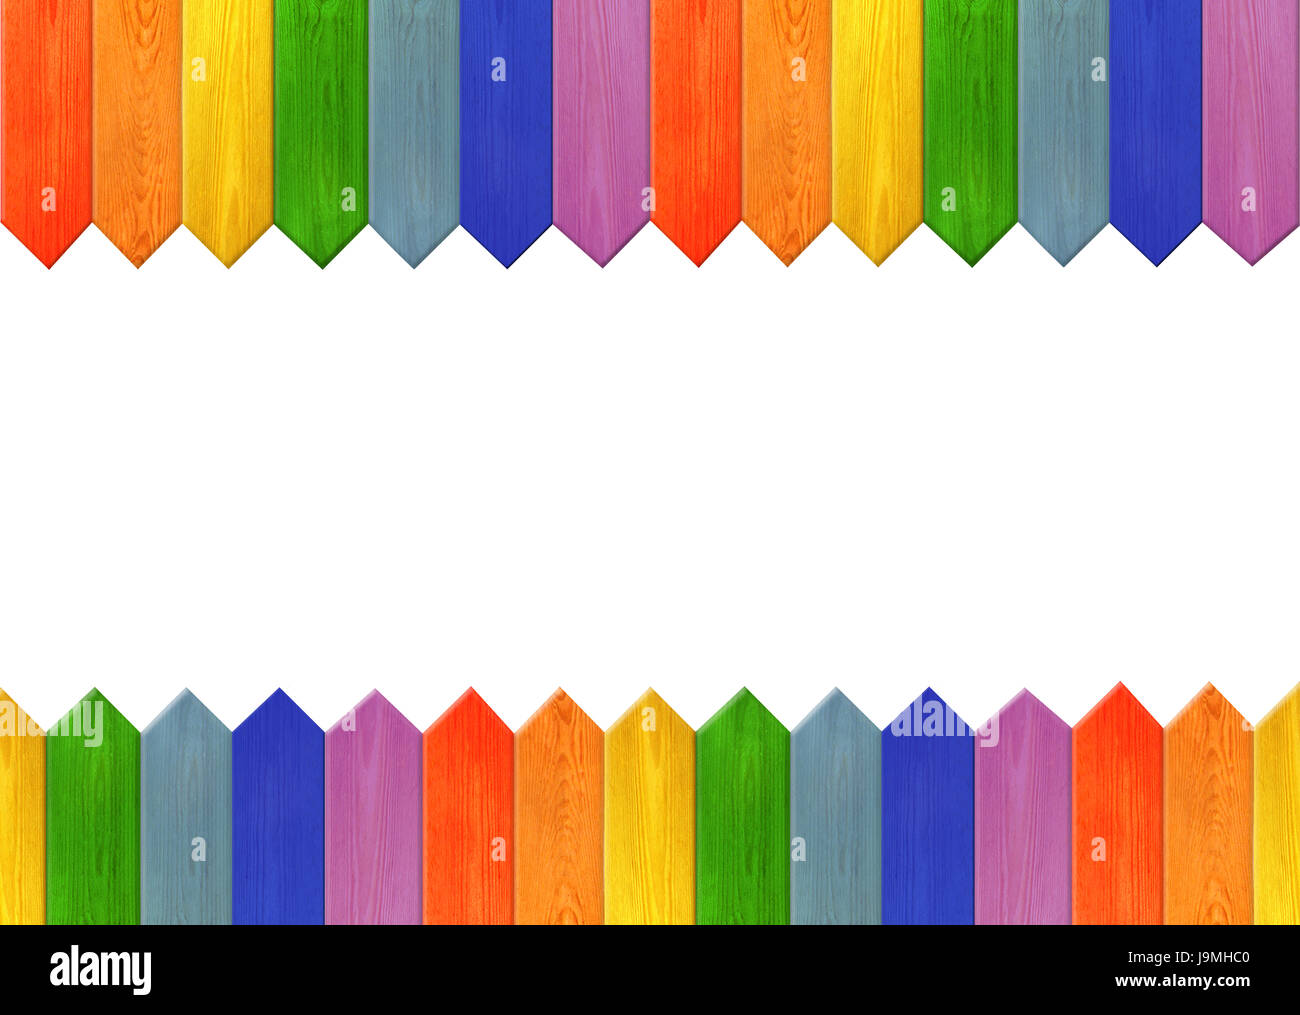 Motivo dal multicolore schede affilata come un arcobaleno. Lo sfondo da strisce di colori diversi Foto Stock